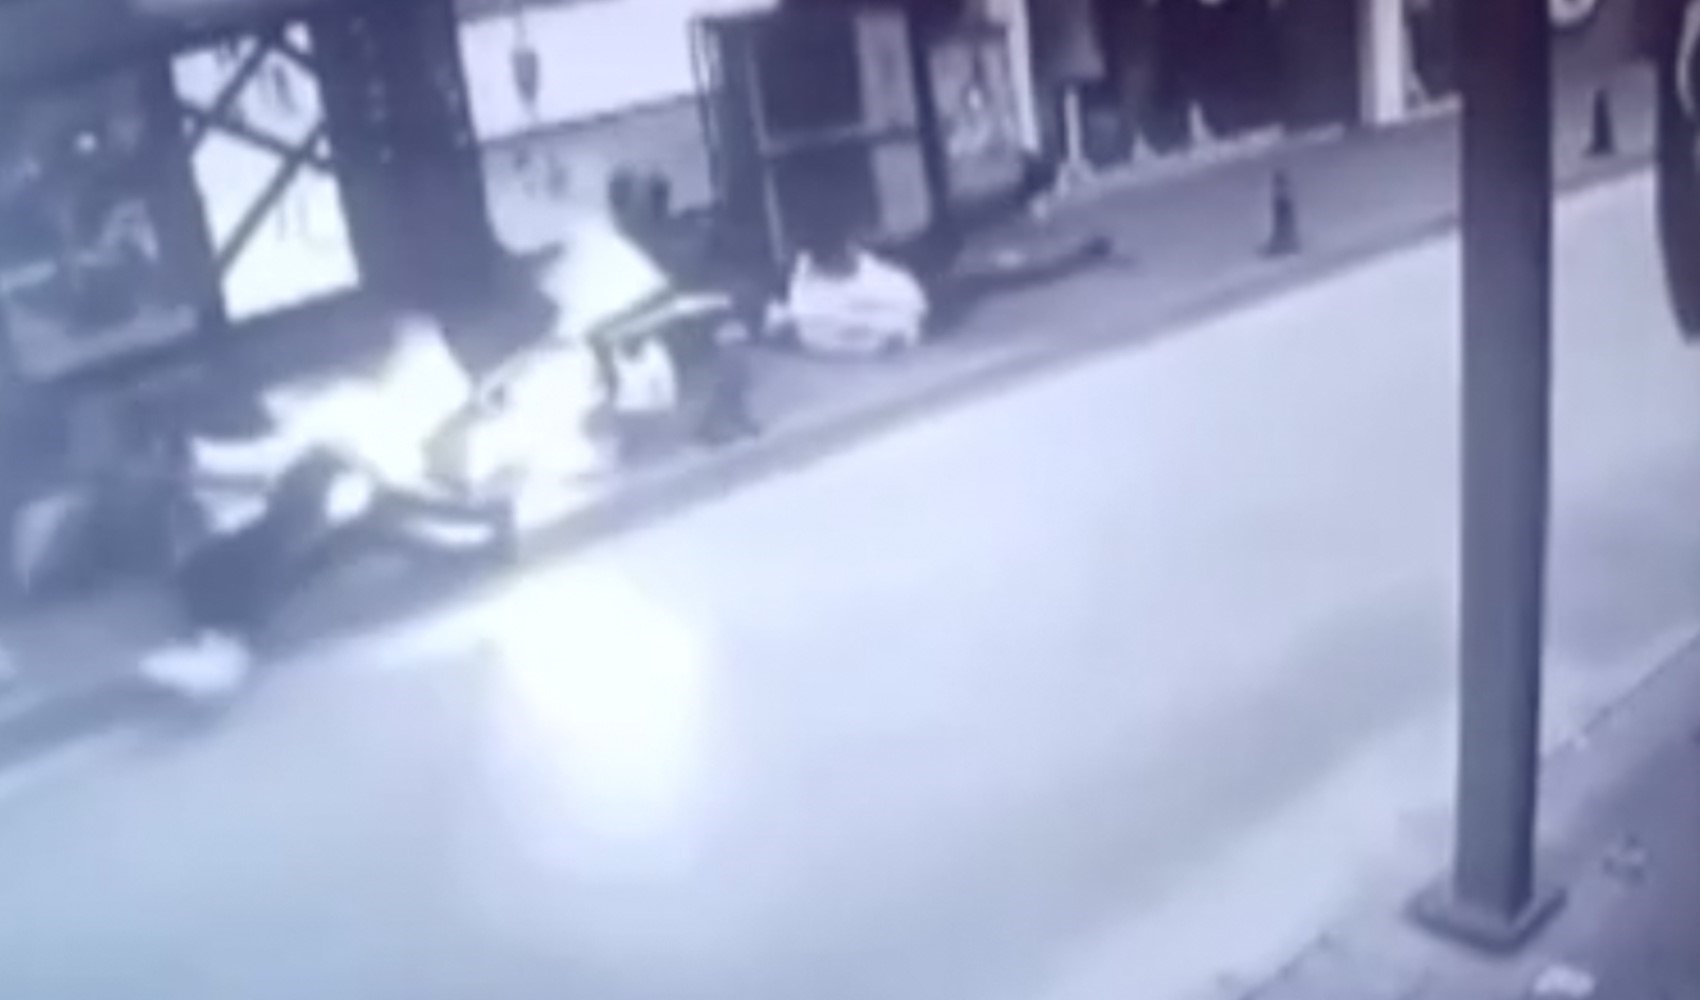 İzmir’de motosiklet kaldırımda yürüyenlerin arasına daldı! Feci kaza kamerada